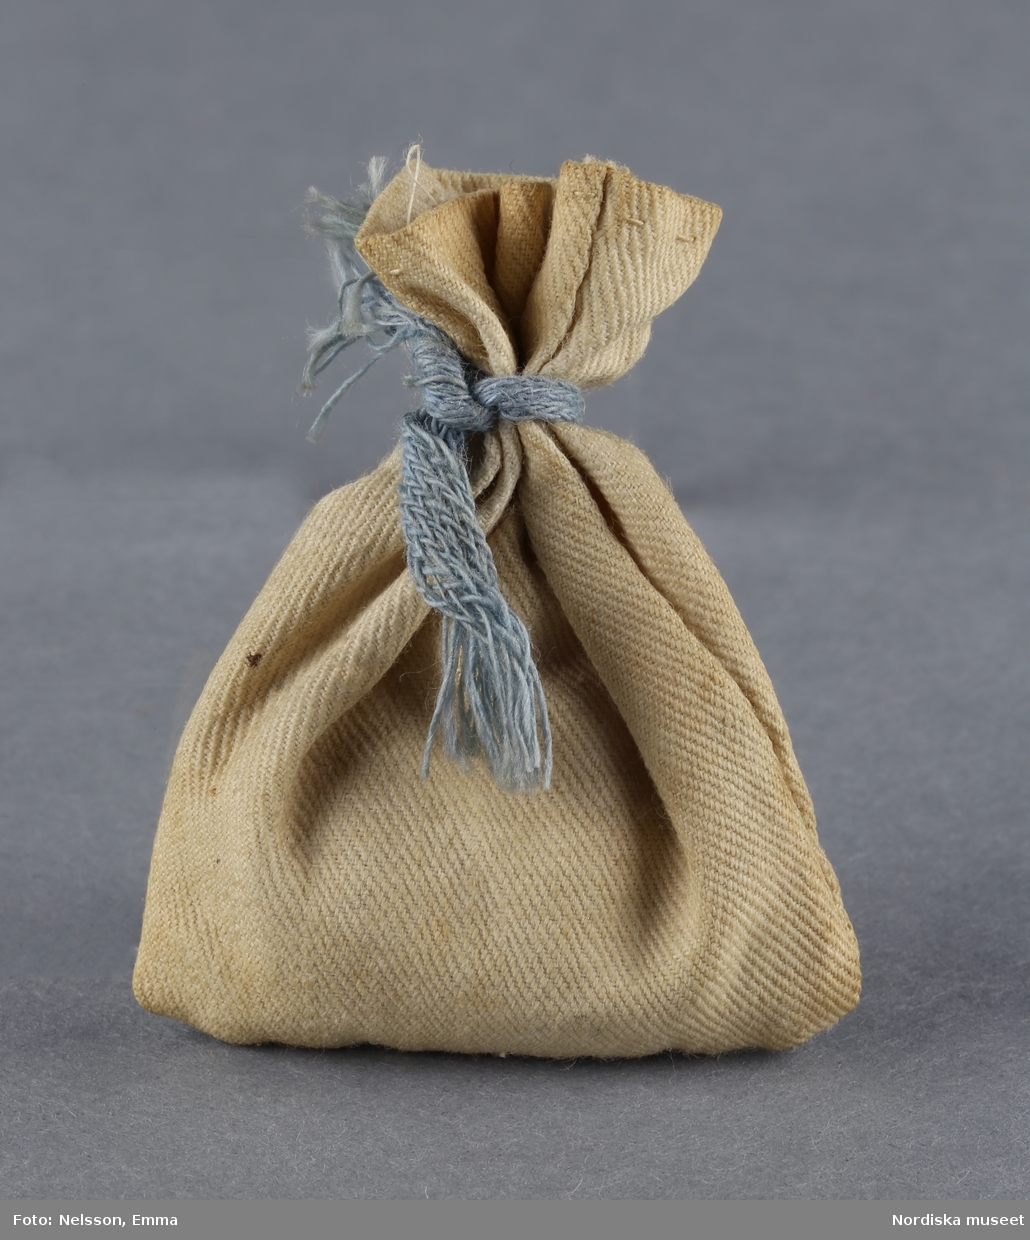 Inventering Sesam 1996-1999:
H  5,5  cm
Säck av ofärgad bomull, handsydd, fylld med papper, omknuten med blått band.
Tillhör dockskåp inv 192.991.
Birgitta Martinius 1996